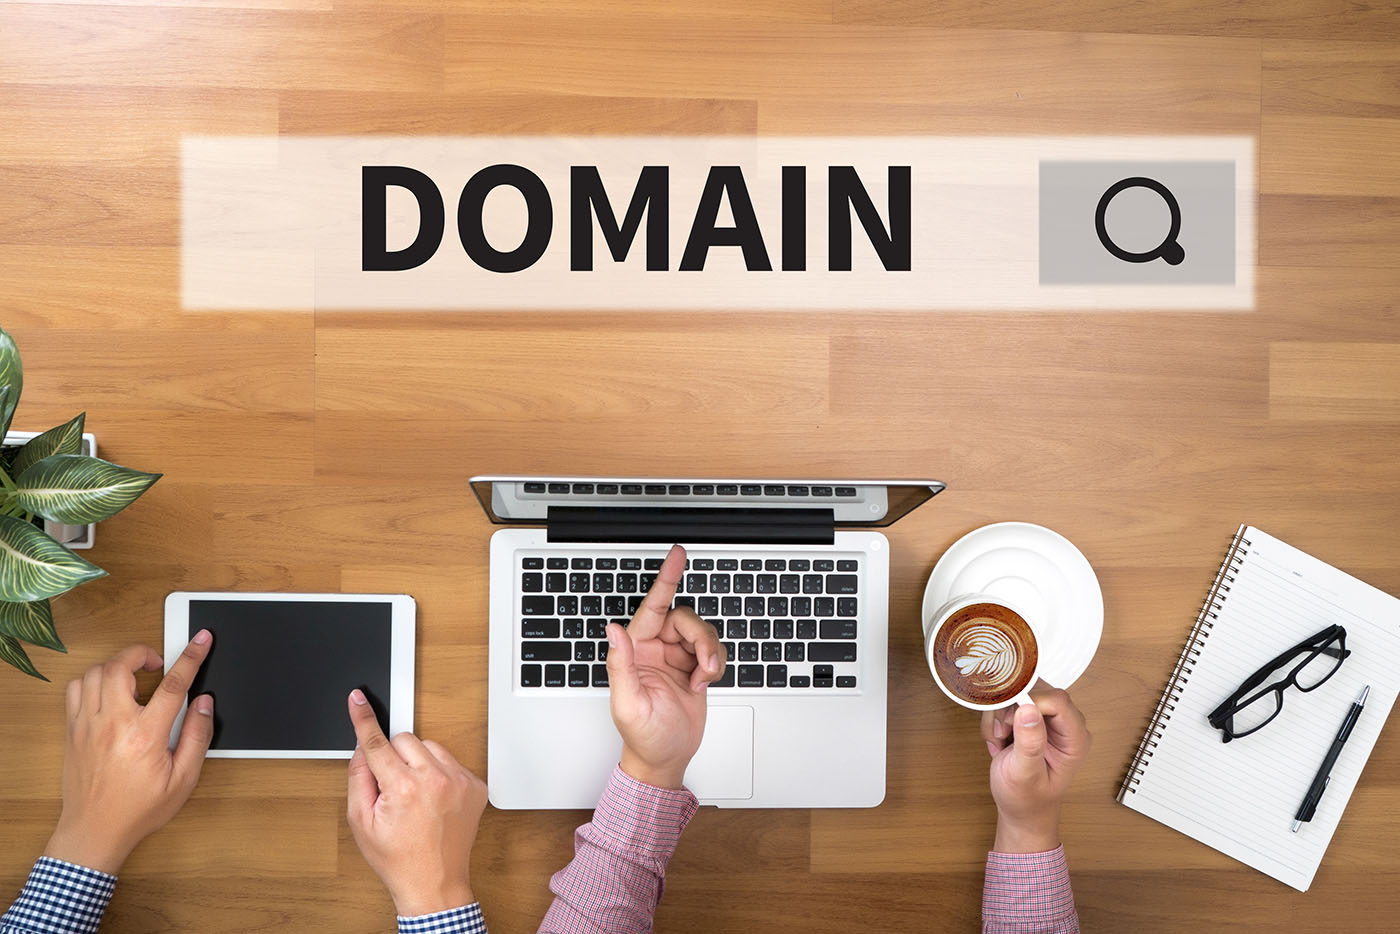 Εμείς στην Konet είμαστε εδώ για να σε διαβεβαιώσουμε ότι η μεταφορά του domain σου μπορεί να είναι μια εύκολη και οικονομικά συμφέρουσα διαδικασία.